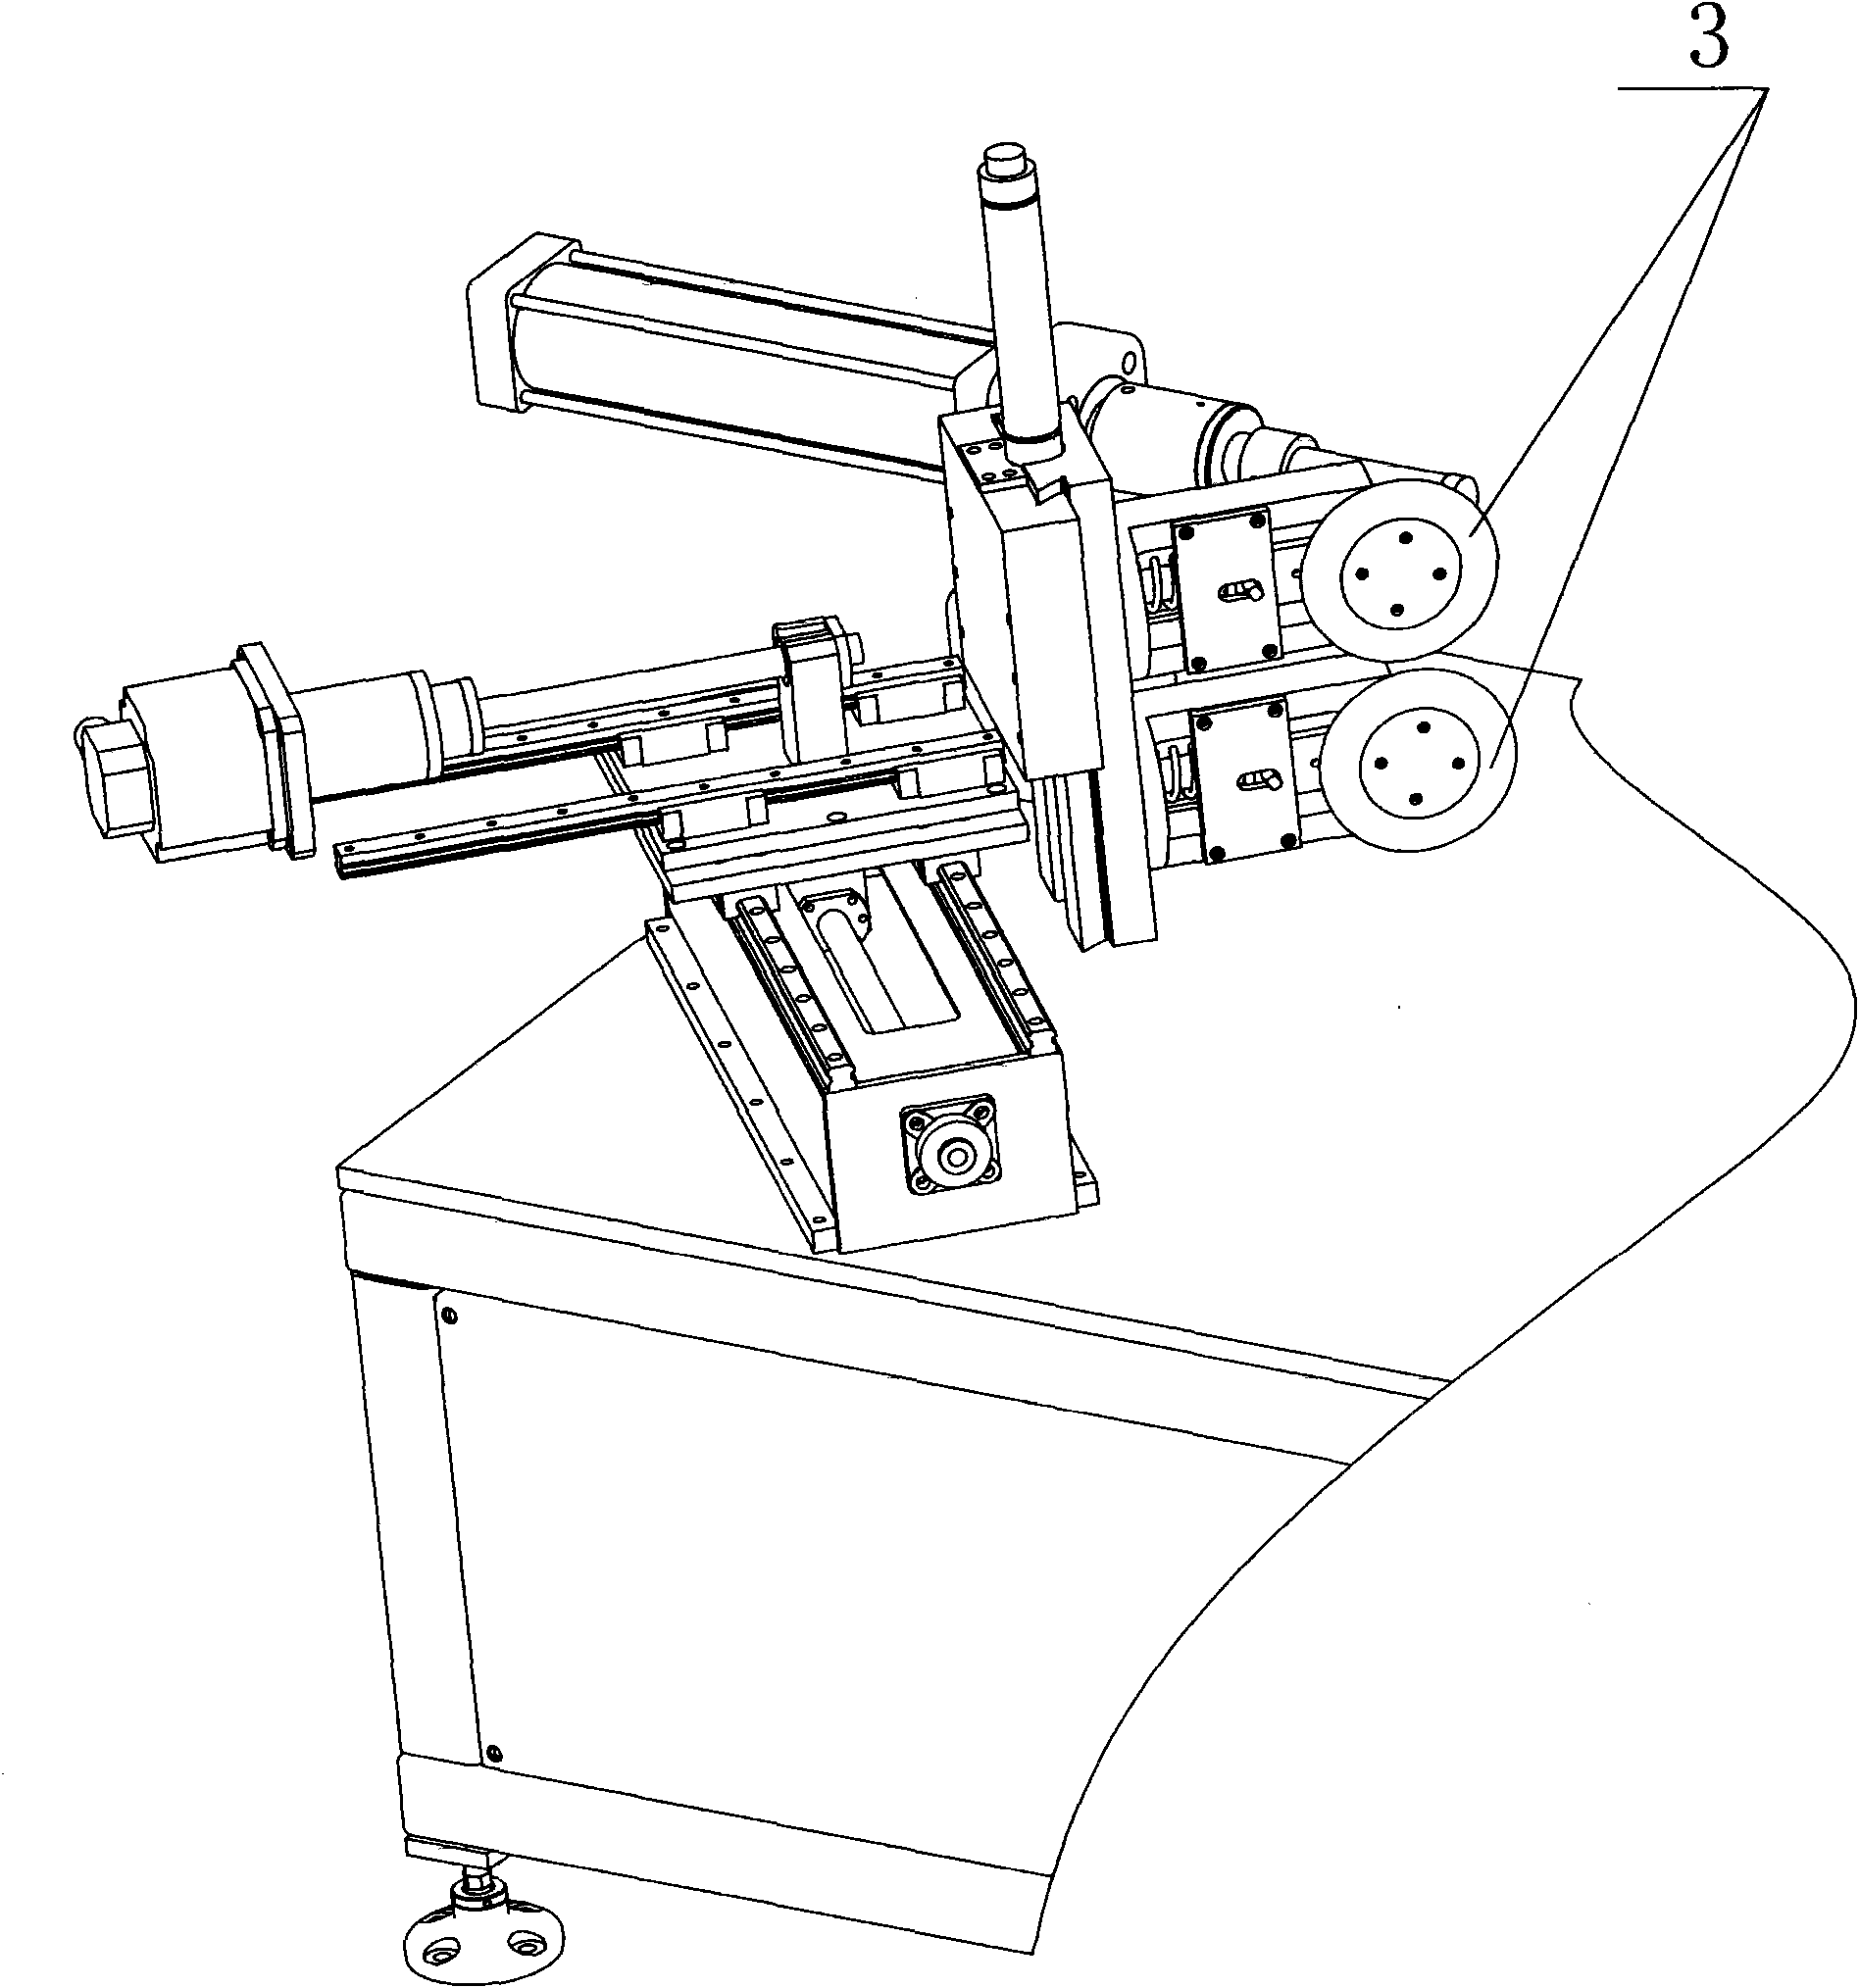 Self-adapting spinning mechanism of sheet metal spinning machine